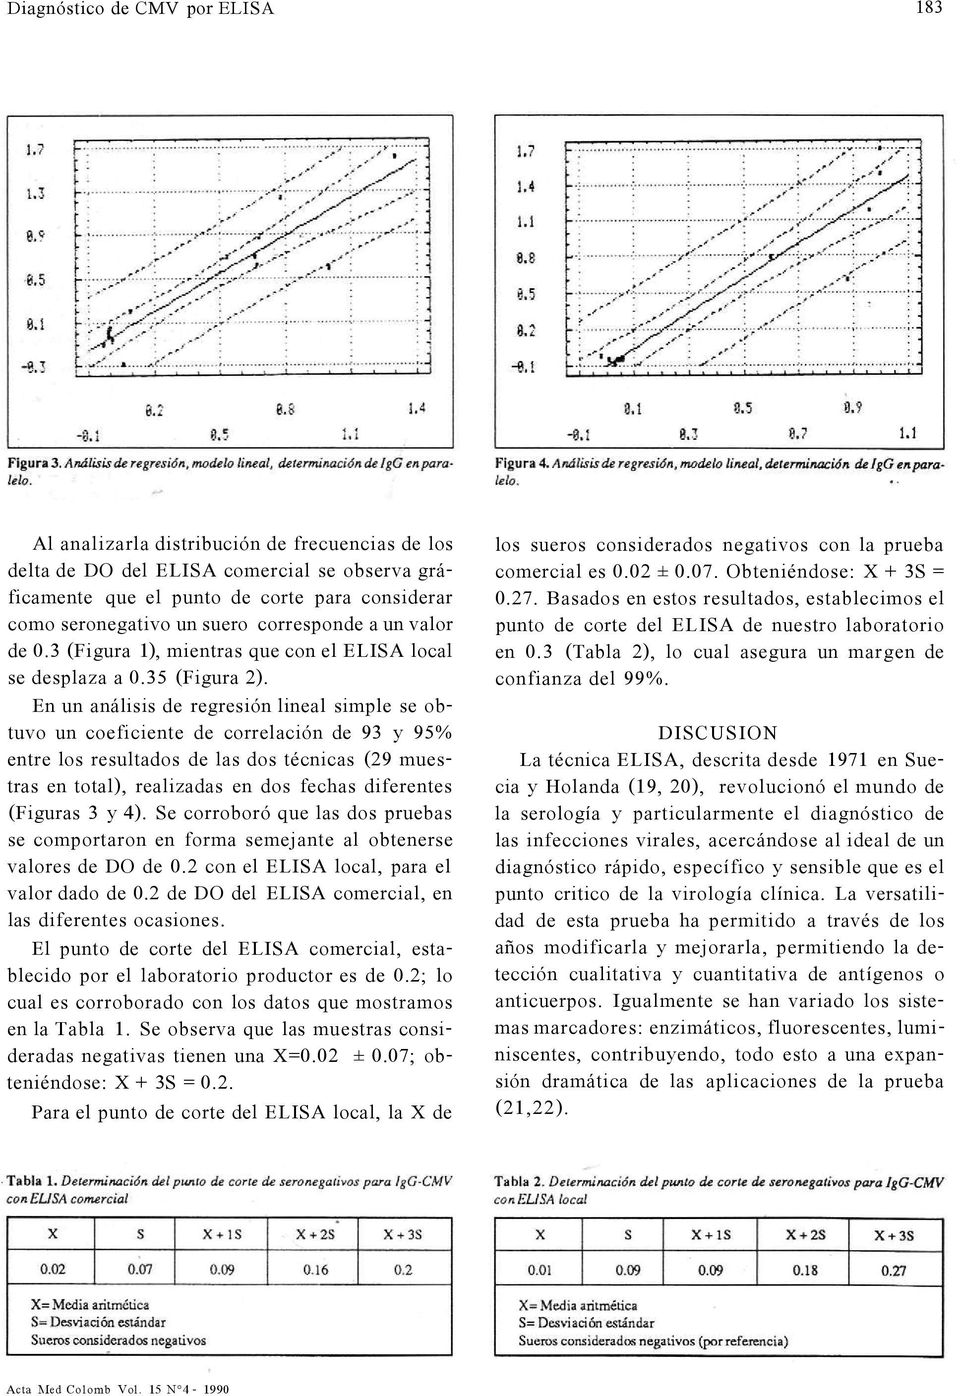 En un análisis de regresión lineal simple se obtuvo un coeficiente de correlación de 93 y 95% entre los resultados de las dos técnicas (29 muestras en total), realizadas en dos fechas diferentes